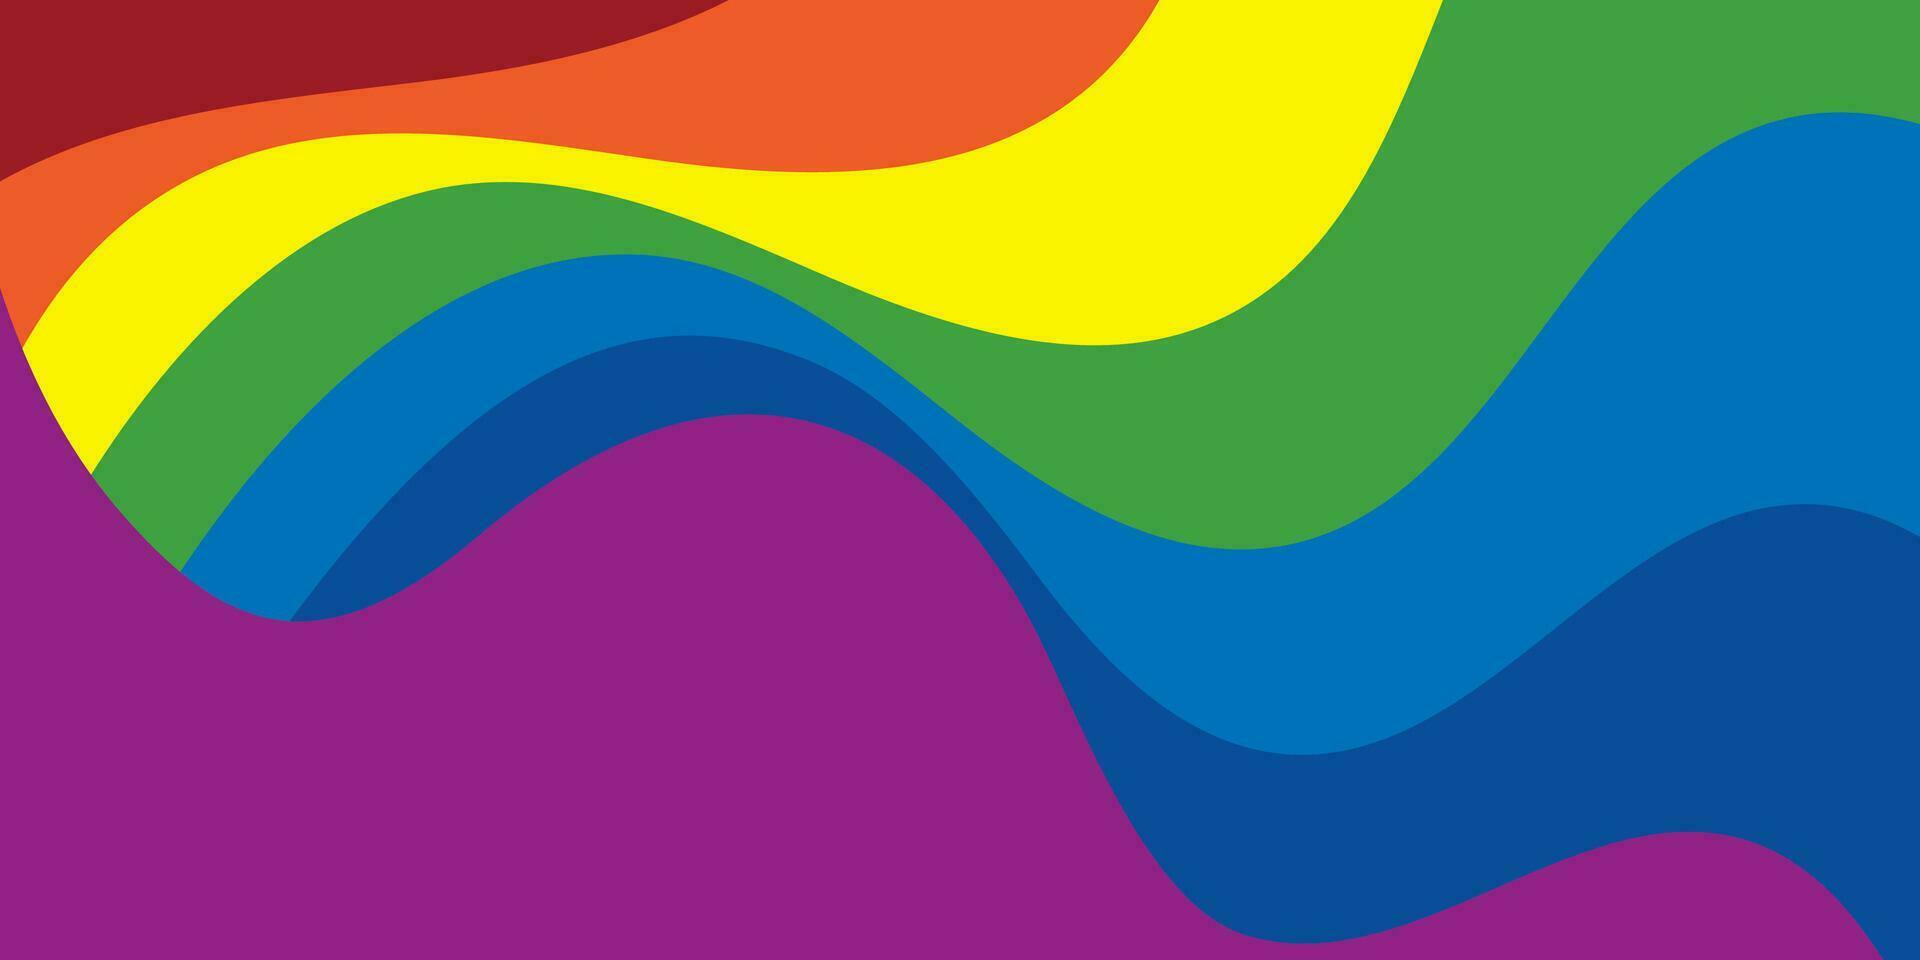 abstract kleurrijk achtergrond, blauw, rood, geel, groente, roze, oranje, en Purper, meetkundig ronde vorm patroon. vector illustratie.